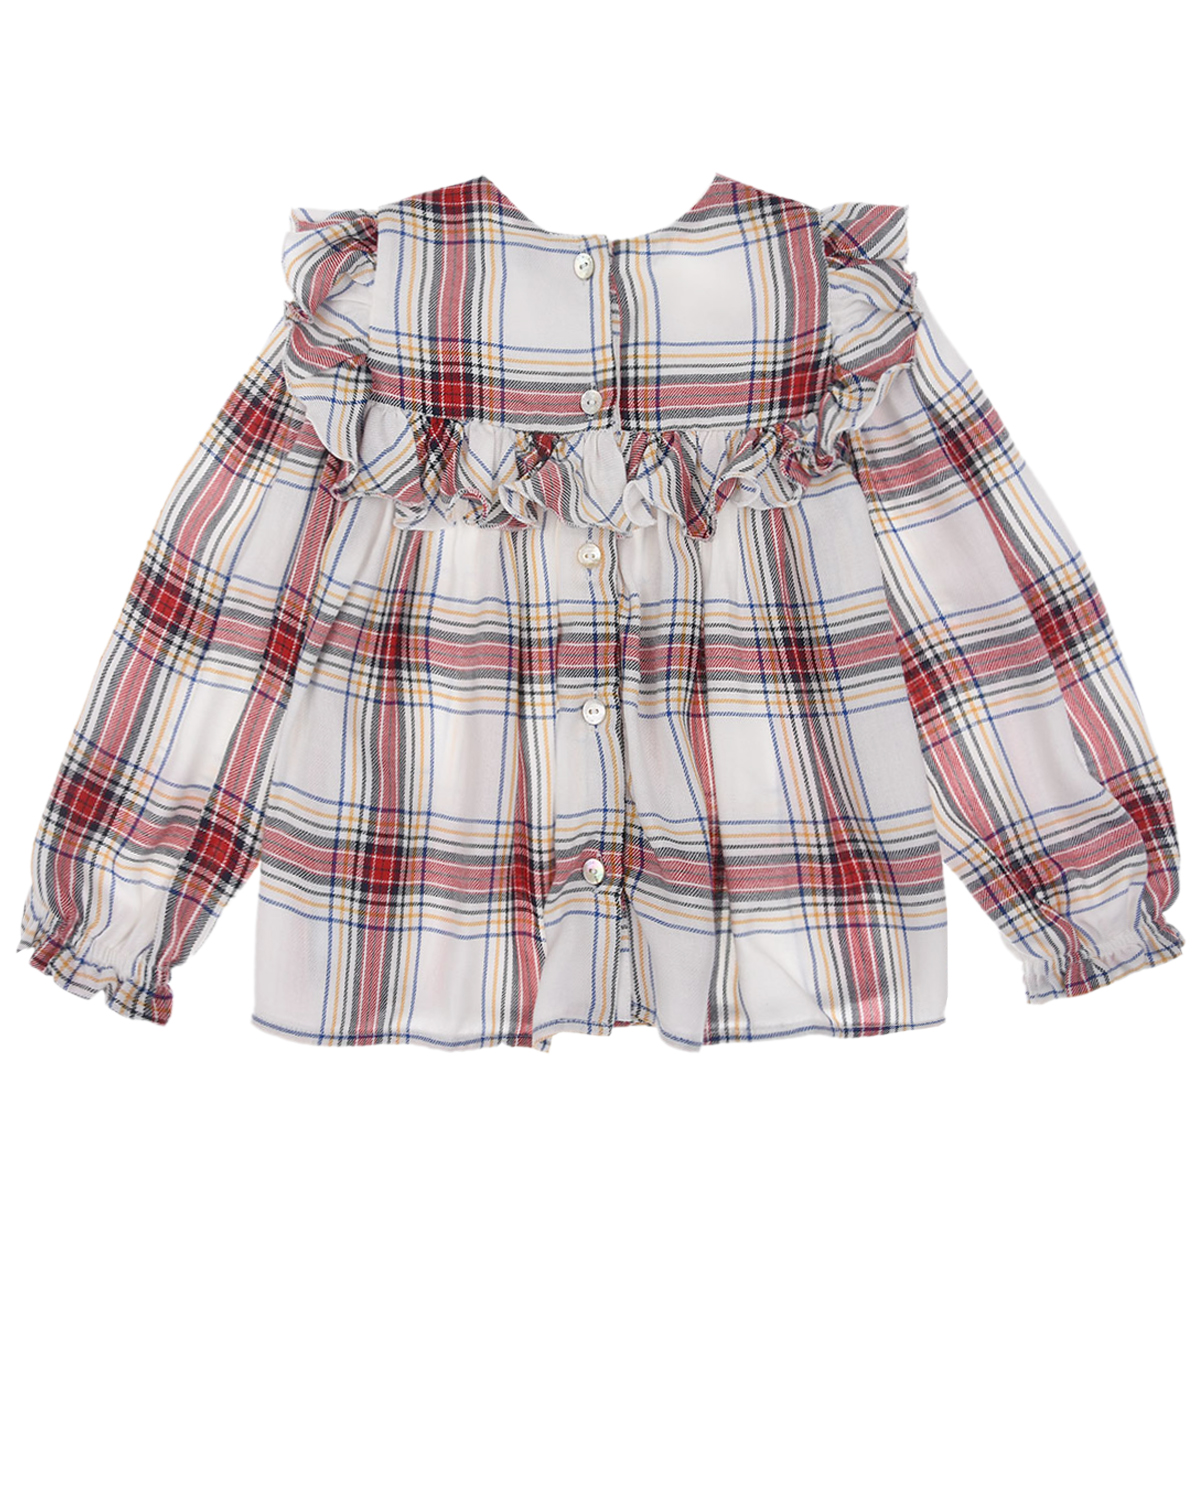 Клетчатая блуза с вязаным декором Monnalisa детская, размер 86, цвет мультиколор - фото 2